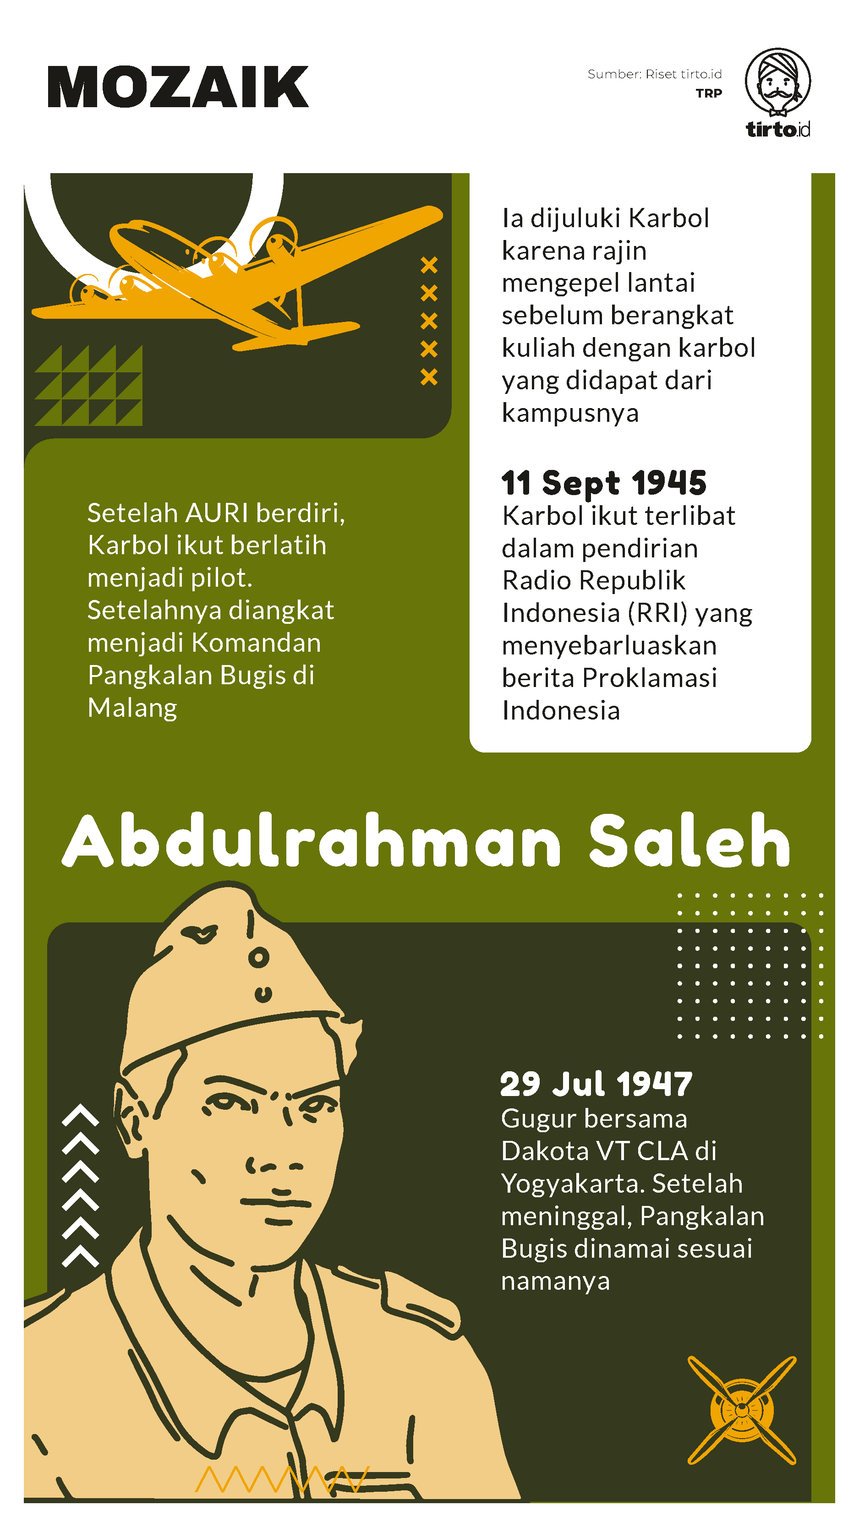 Infografik Mozaik Abdulrahman Saleh